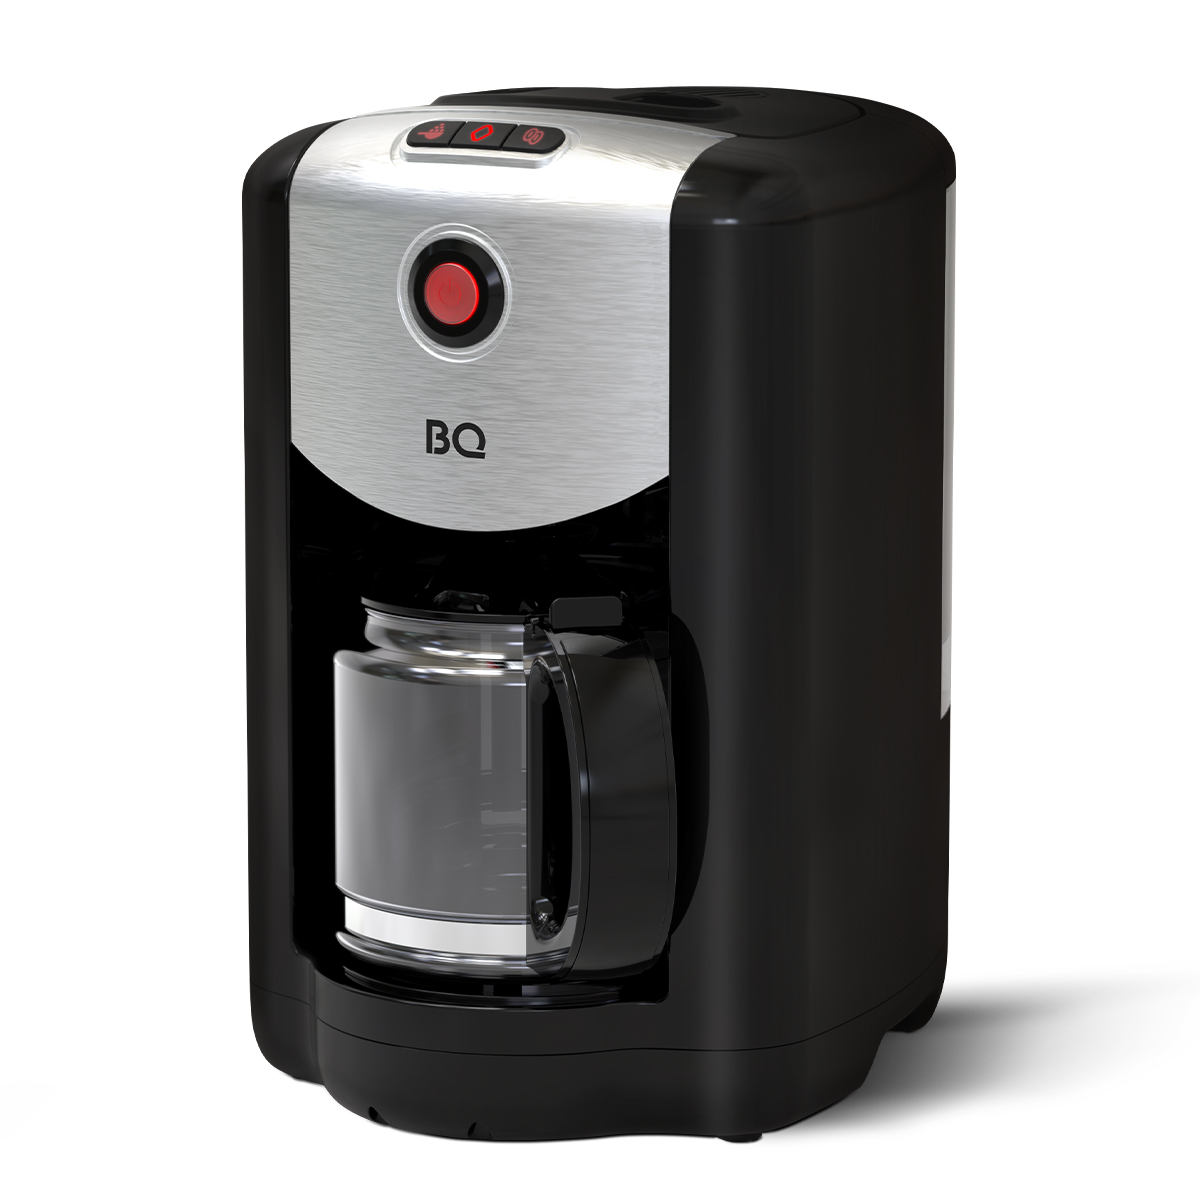 Кофеварка капельного типа BQ CM1009 серебристый, черный кофеварка капельная hyundai hyd 1212 1050вт серебристый